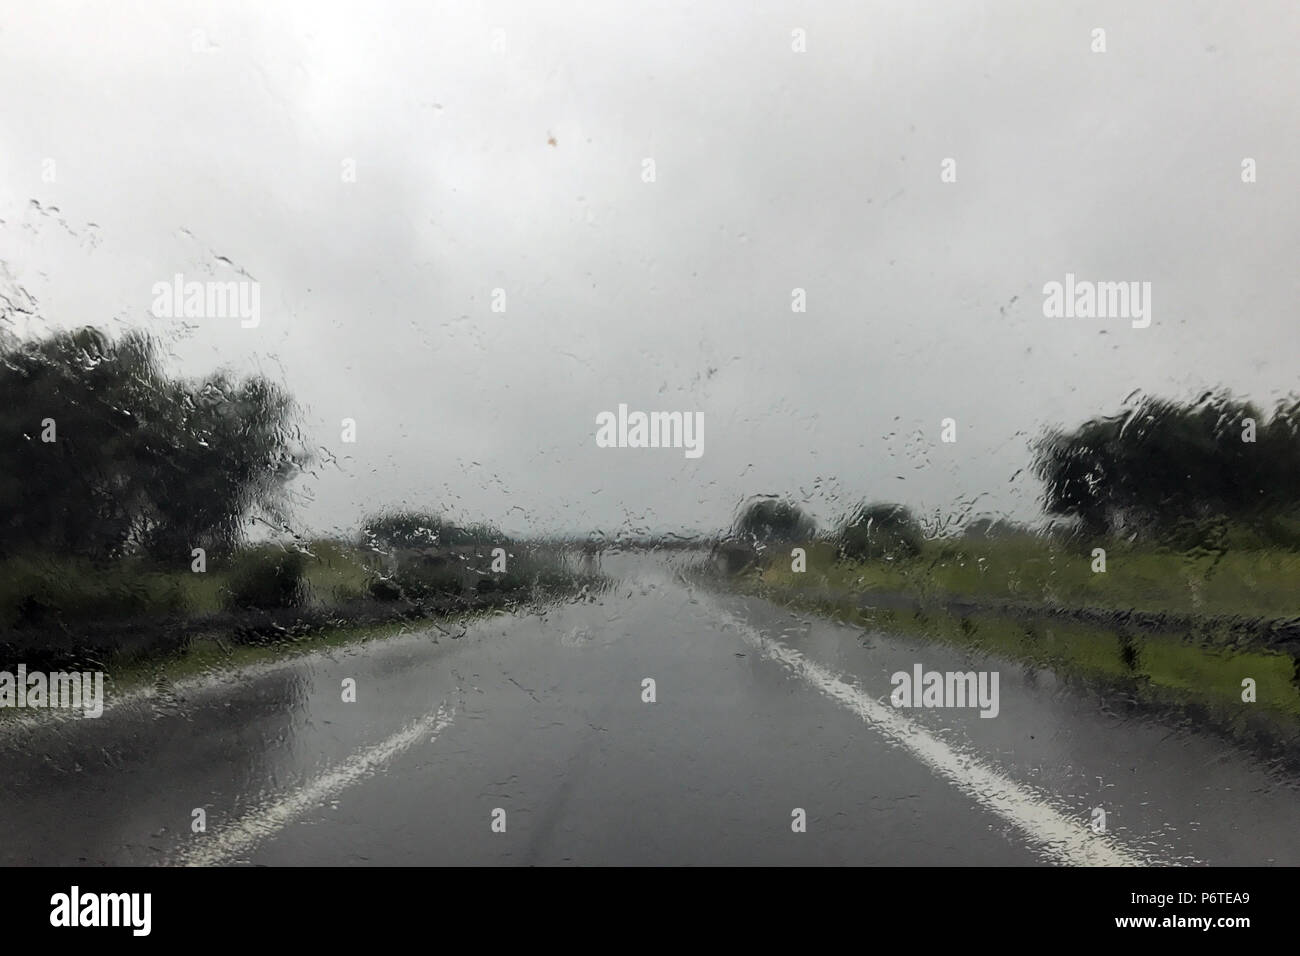 Berlin, Allemagne, la mauvaise visibilité lors de fortes pluies sur une route de campagne Banque D'Images